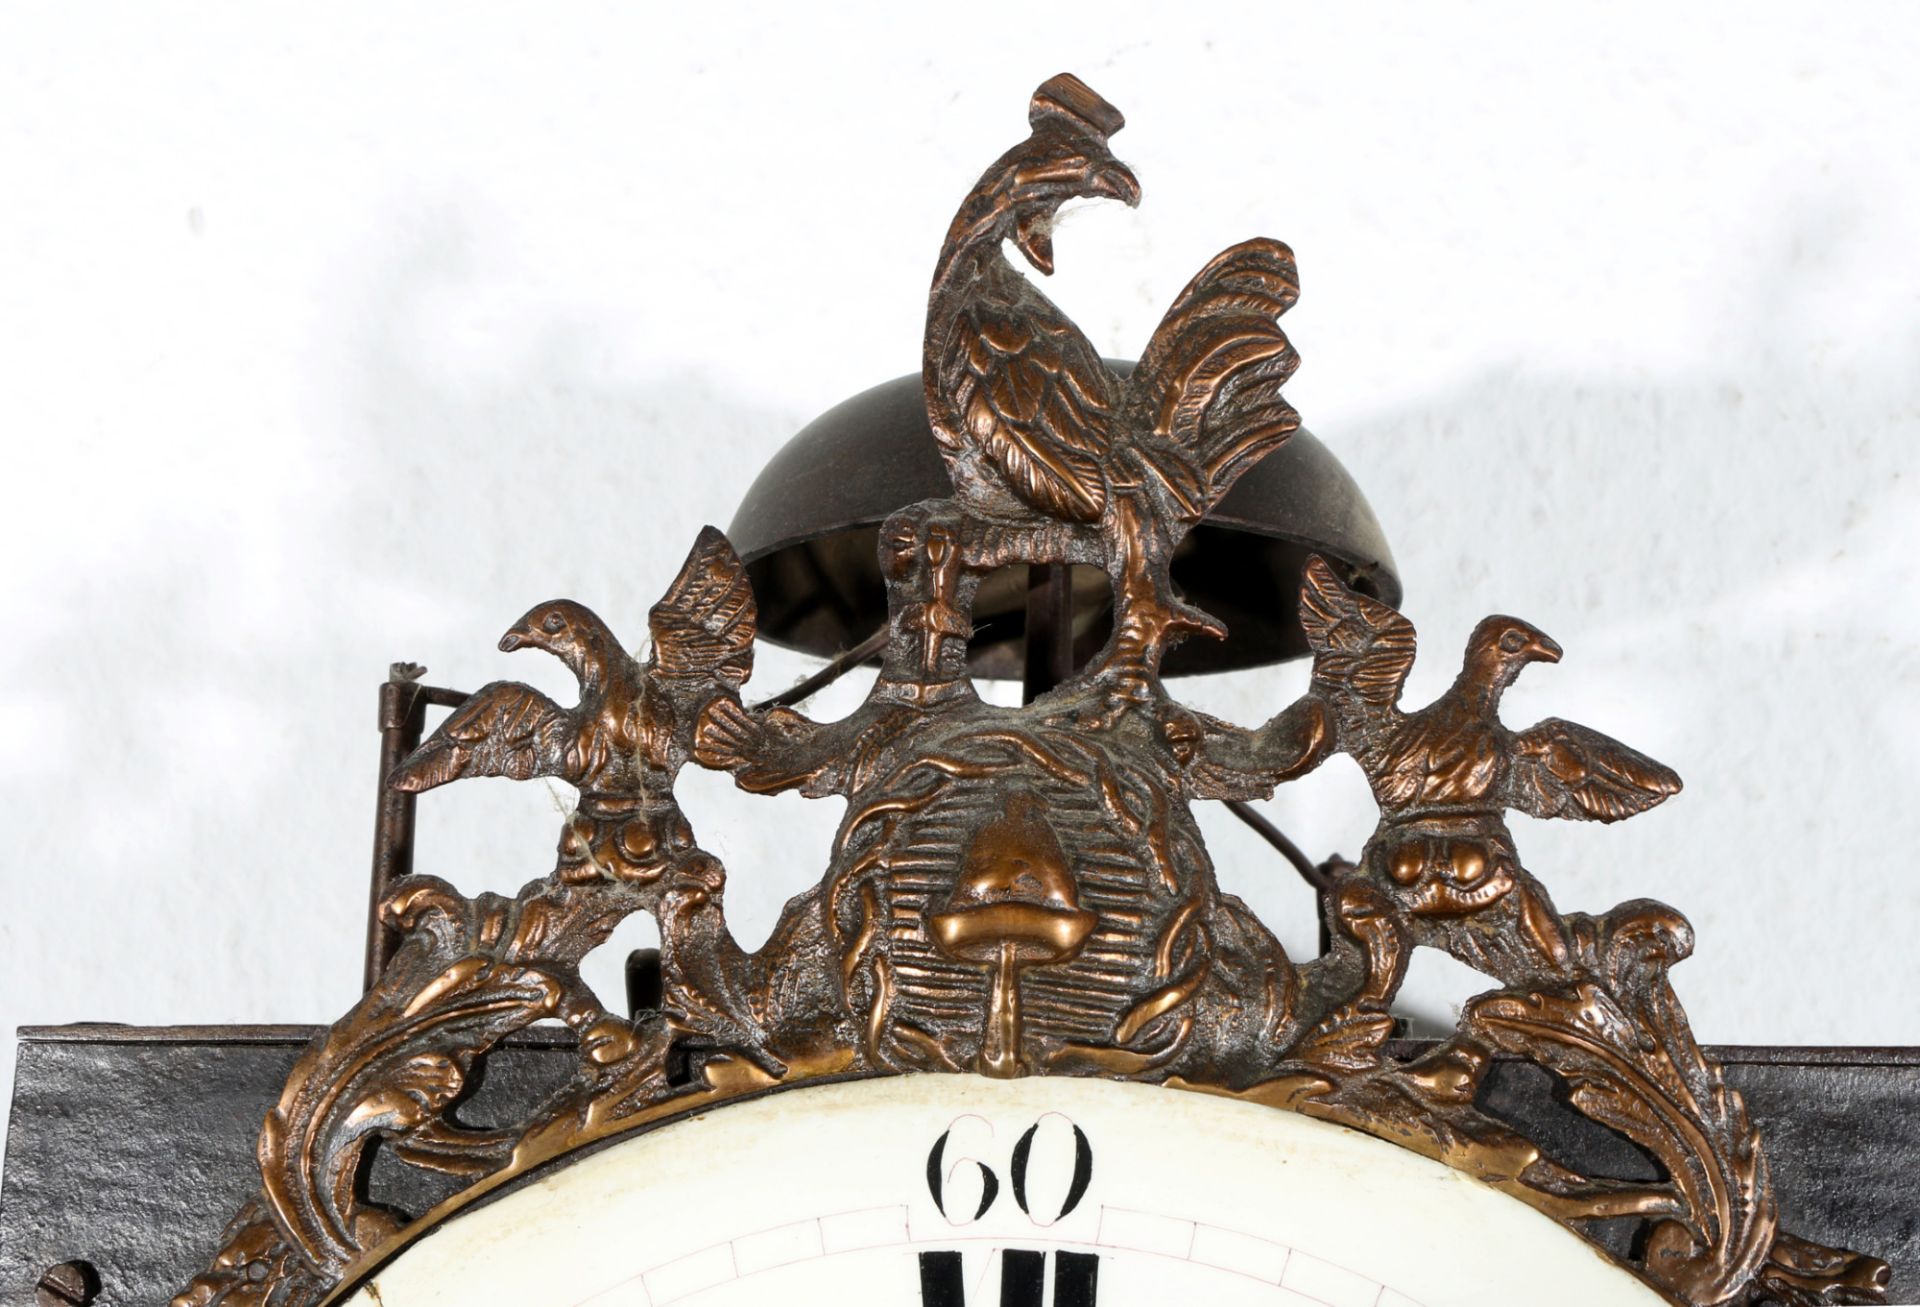 Hähnchenuhr Comtoise Frankreich um 1800, french comtoise rooster clock, - Bild 3 aus 6